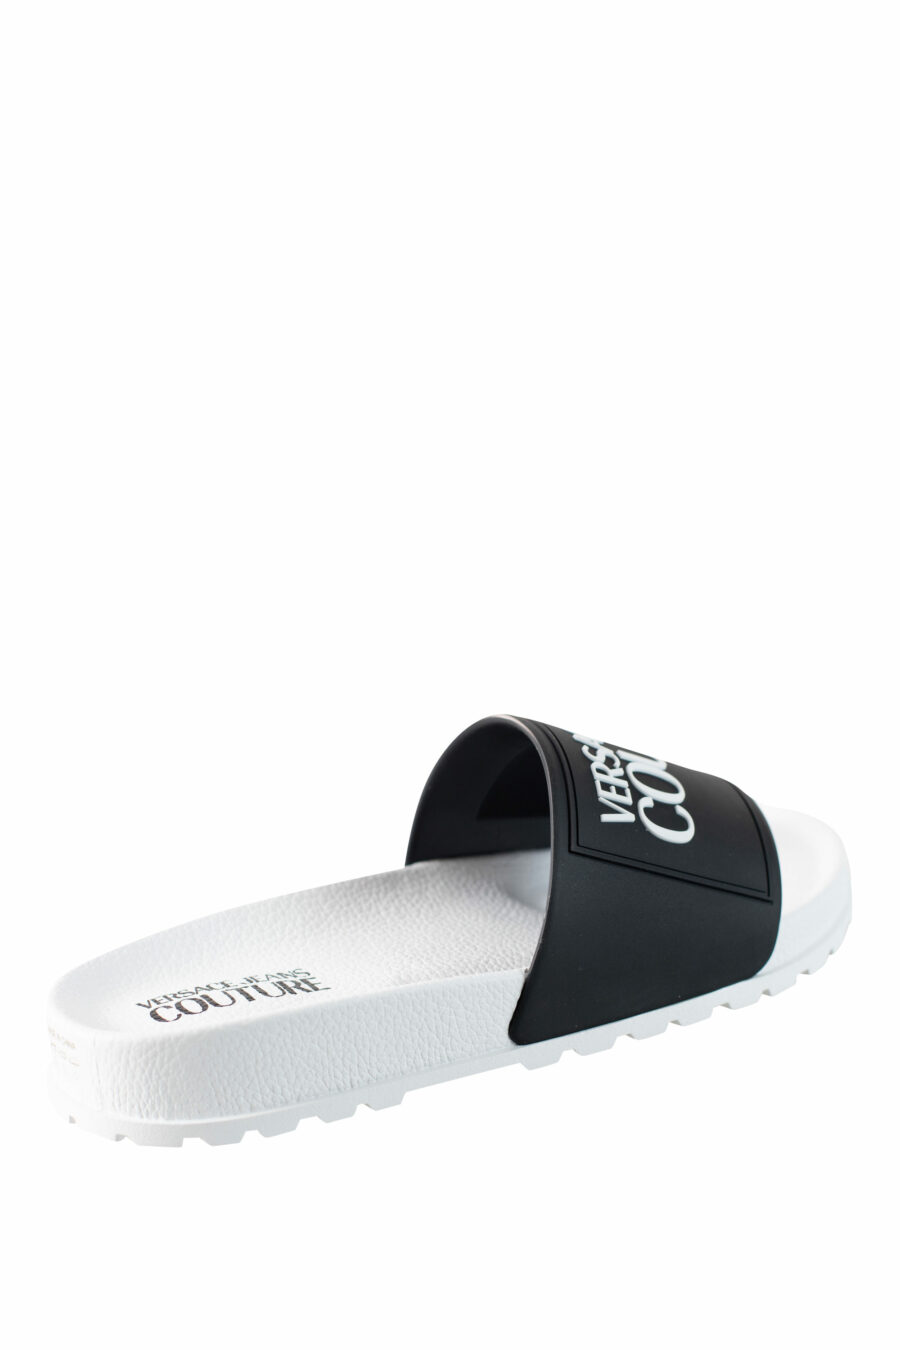 Zweifarbige schwarz-weiße Flip Flops mit weißem Maxilogo - IMG 4419